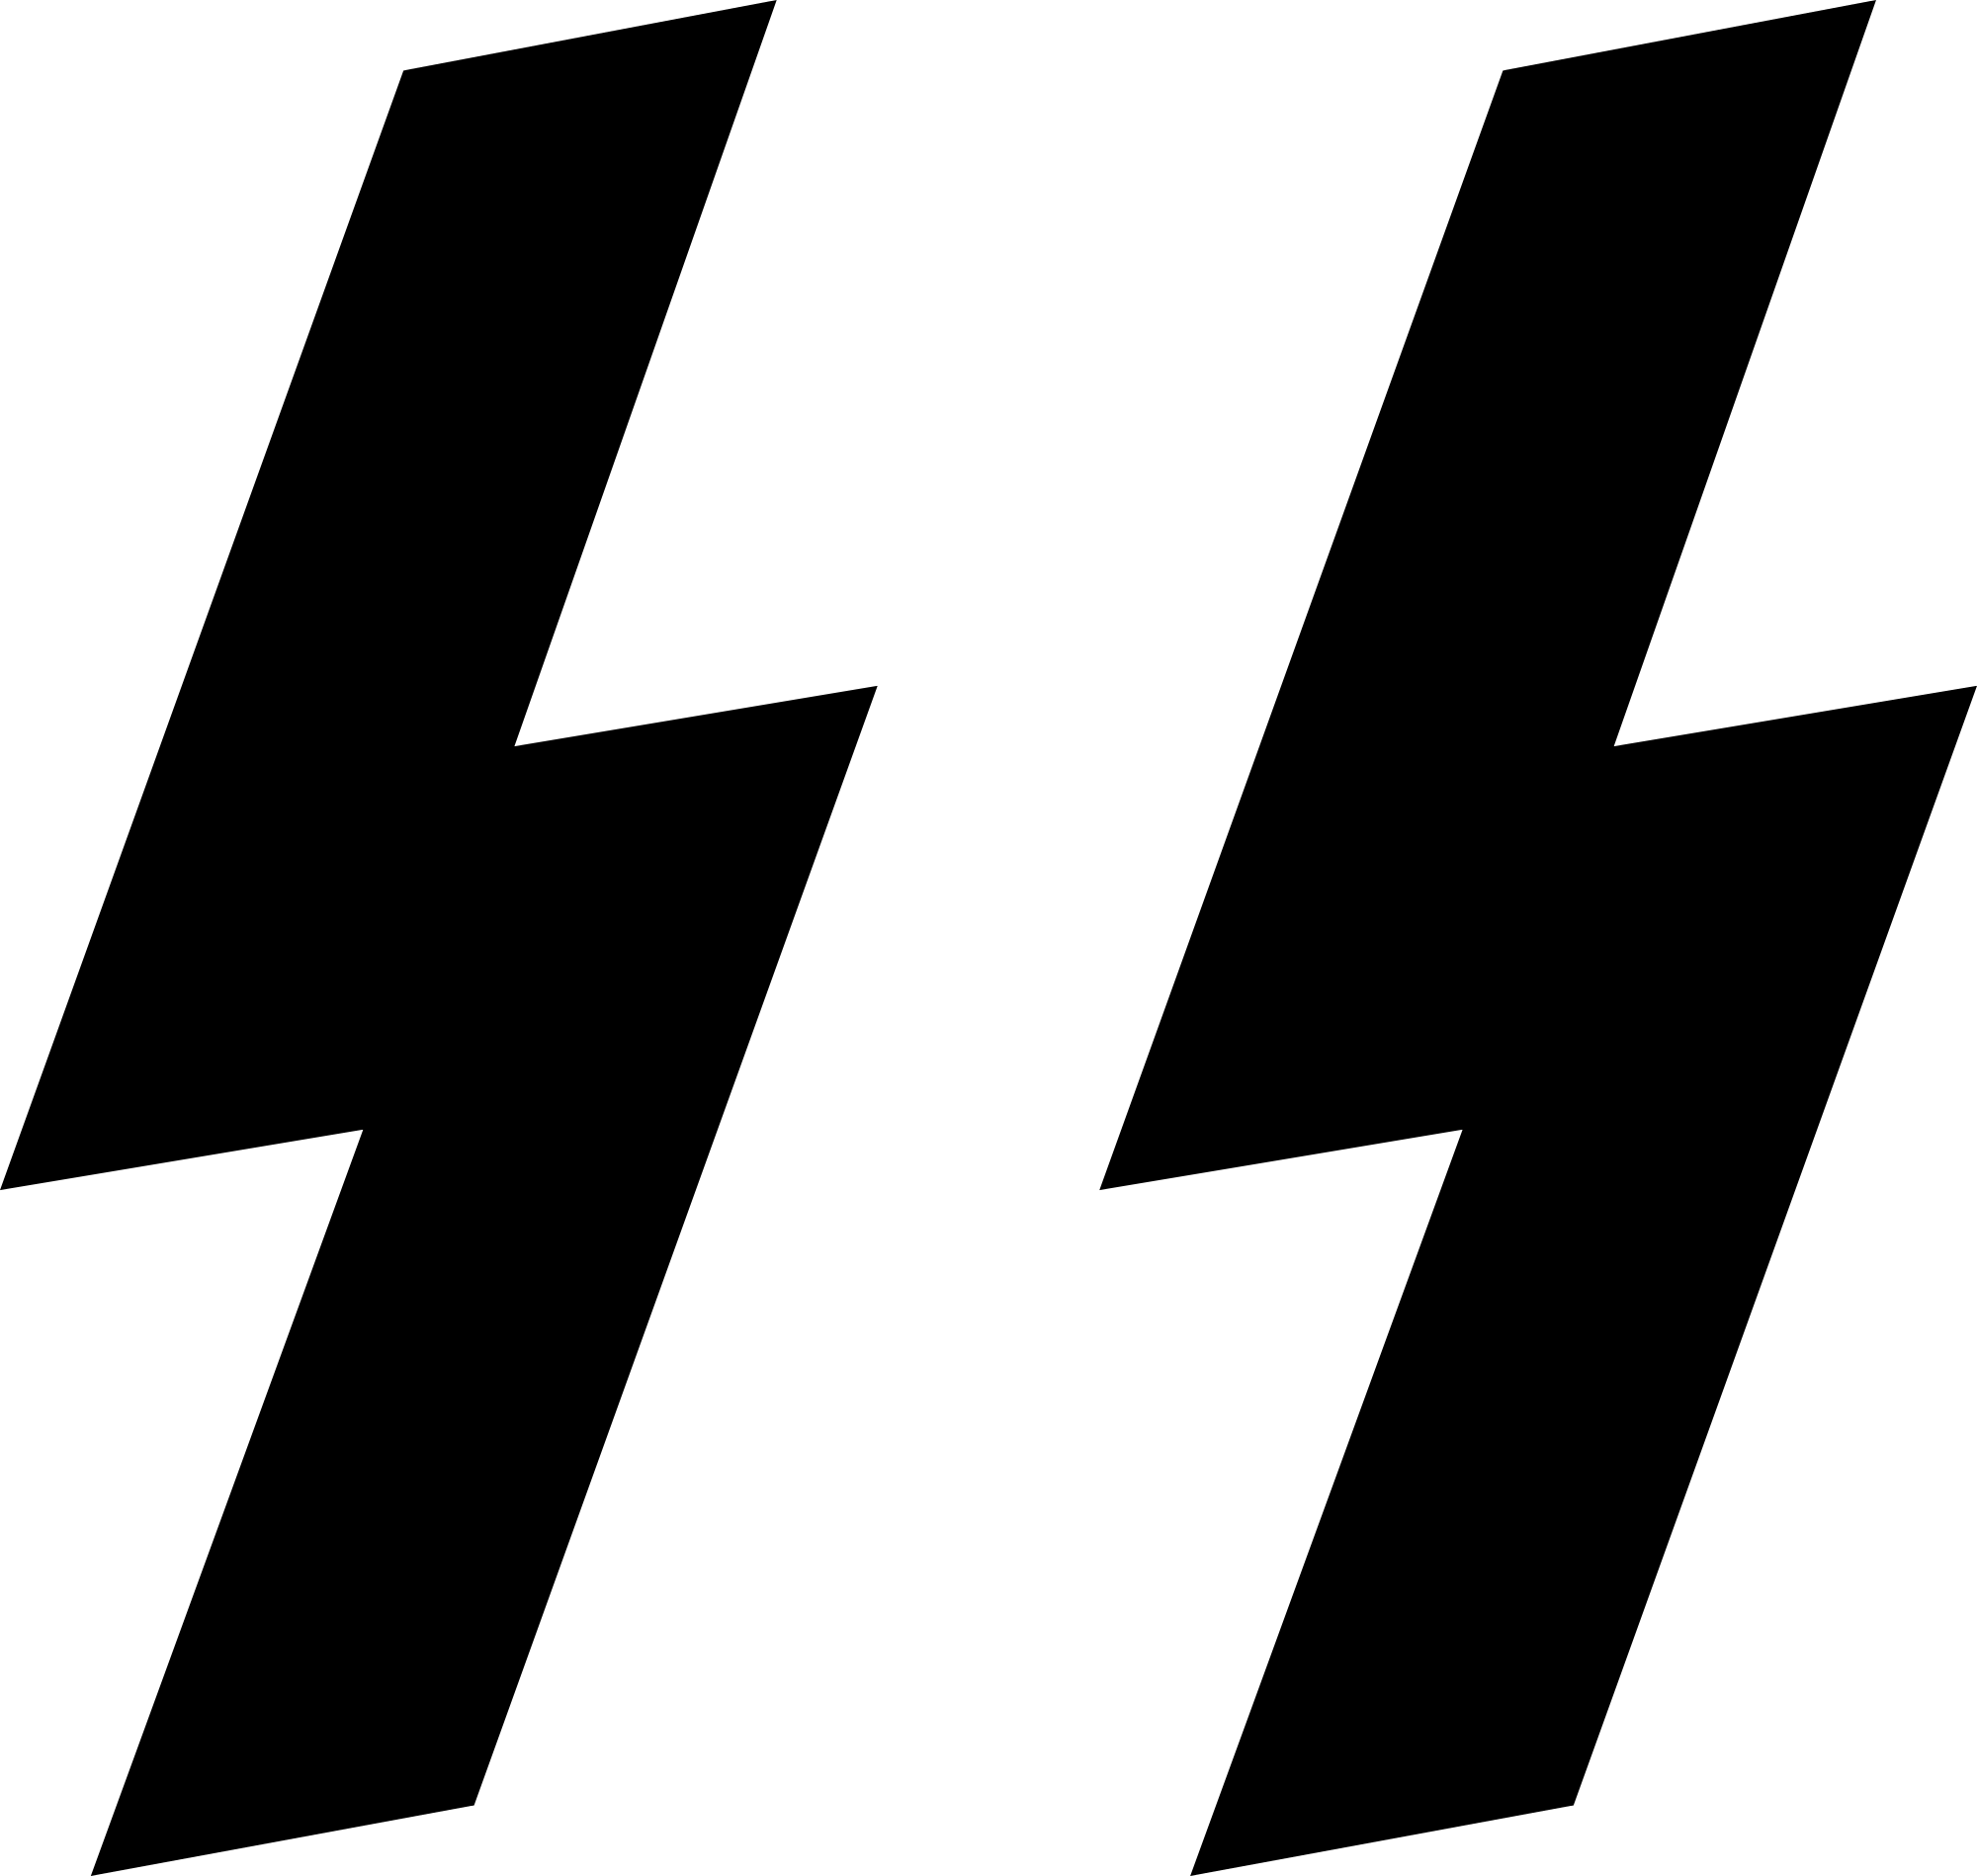 Nazi SS Logo - File:Schutzstaffel SS.svg - Wikimedia Commons